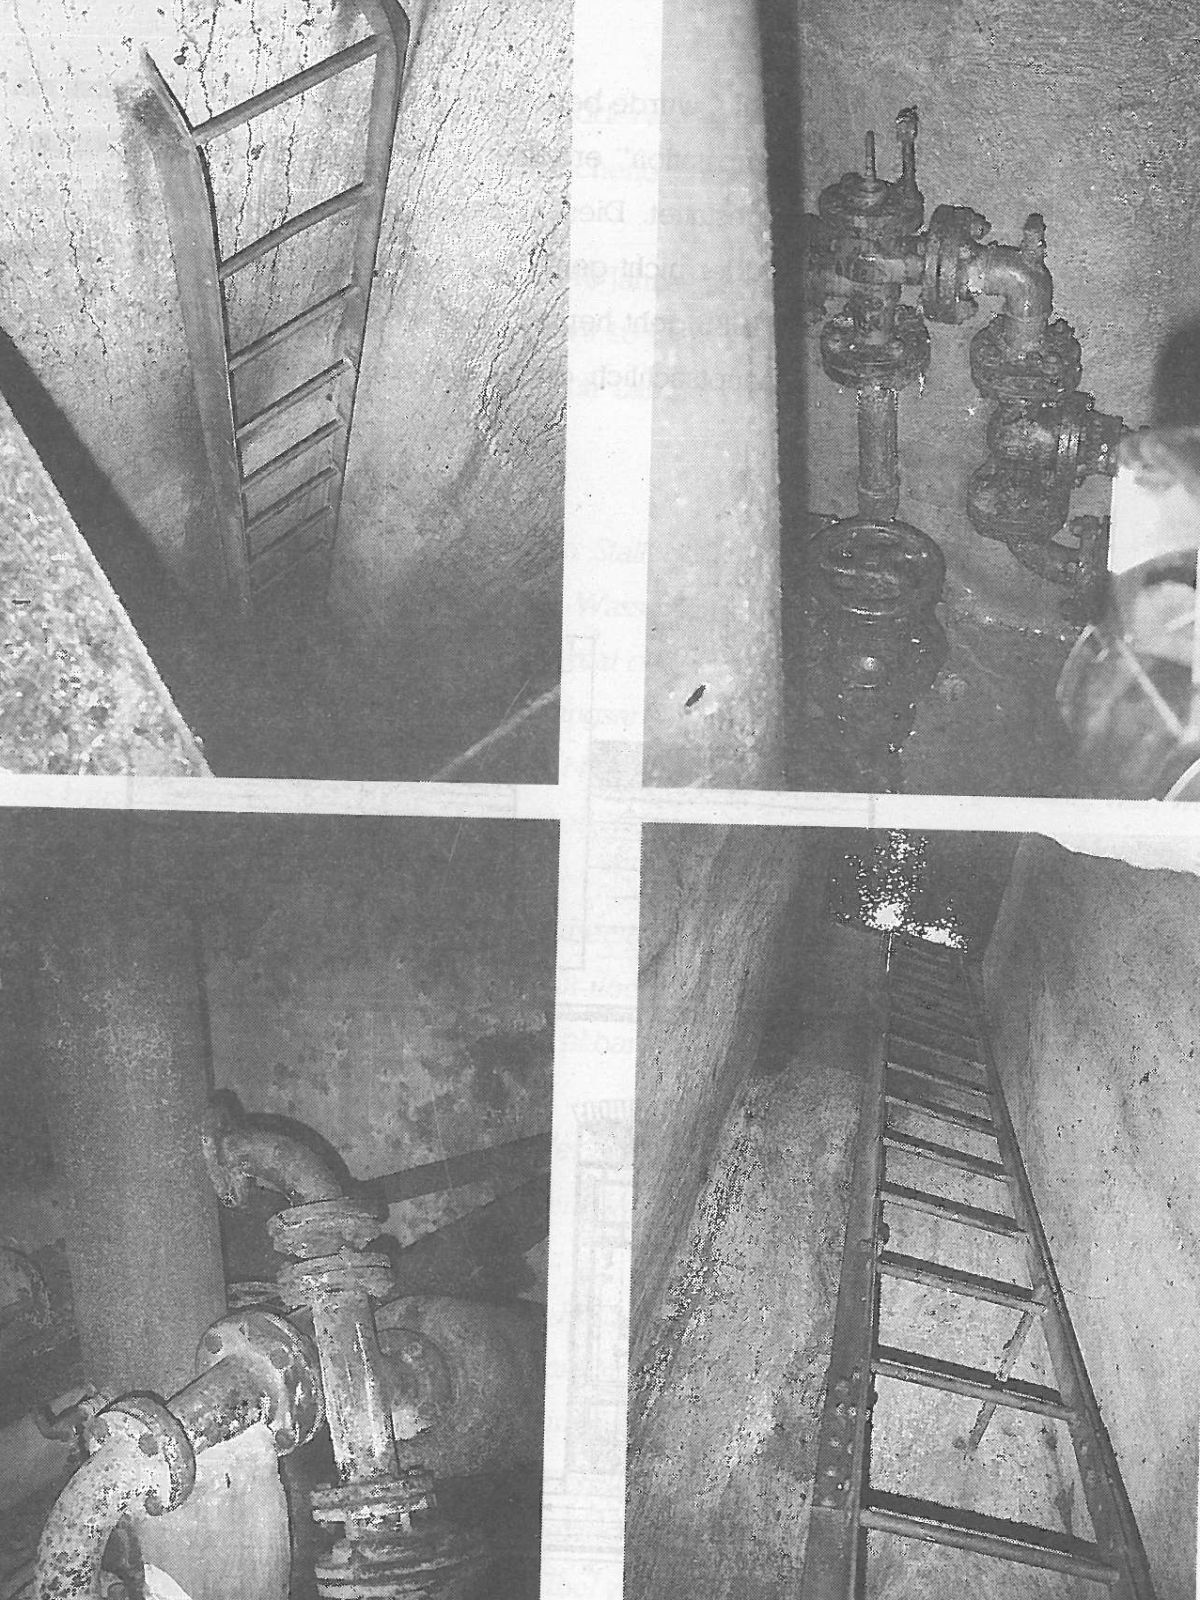  Schopflocher Skizzen Einstiegsleiter zum Widderschacht 2 und Überreste der Widderanlage - Bild wird mit einem Klick vergrößert 